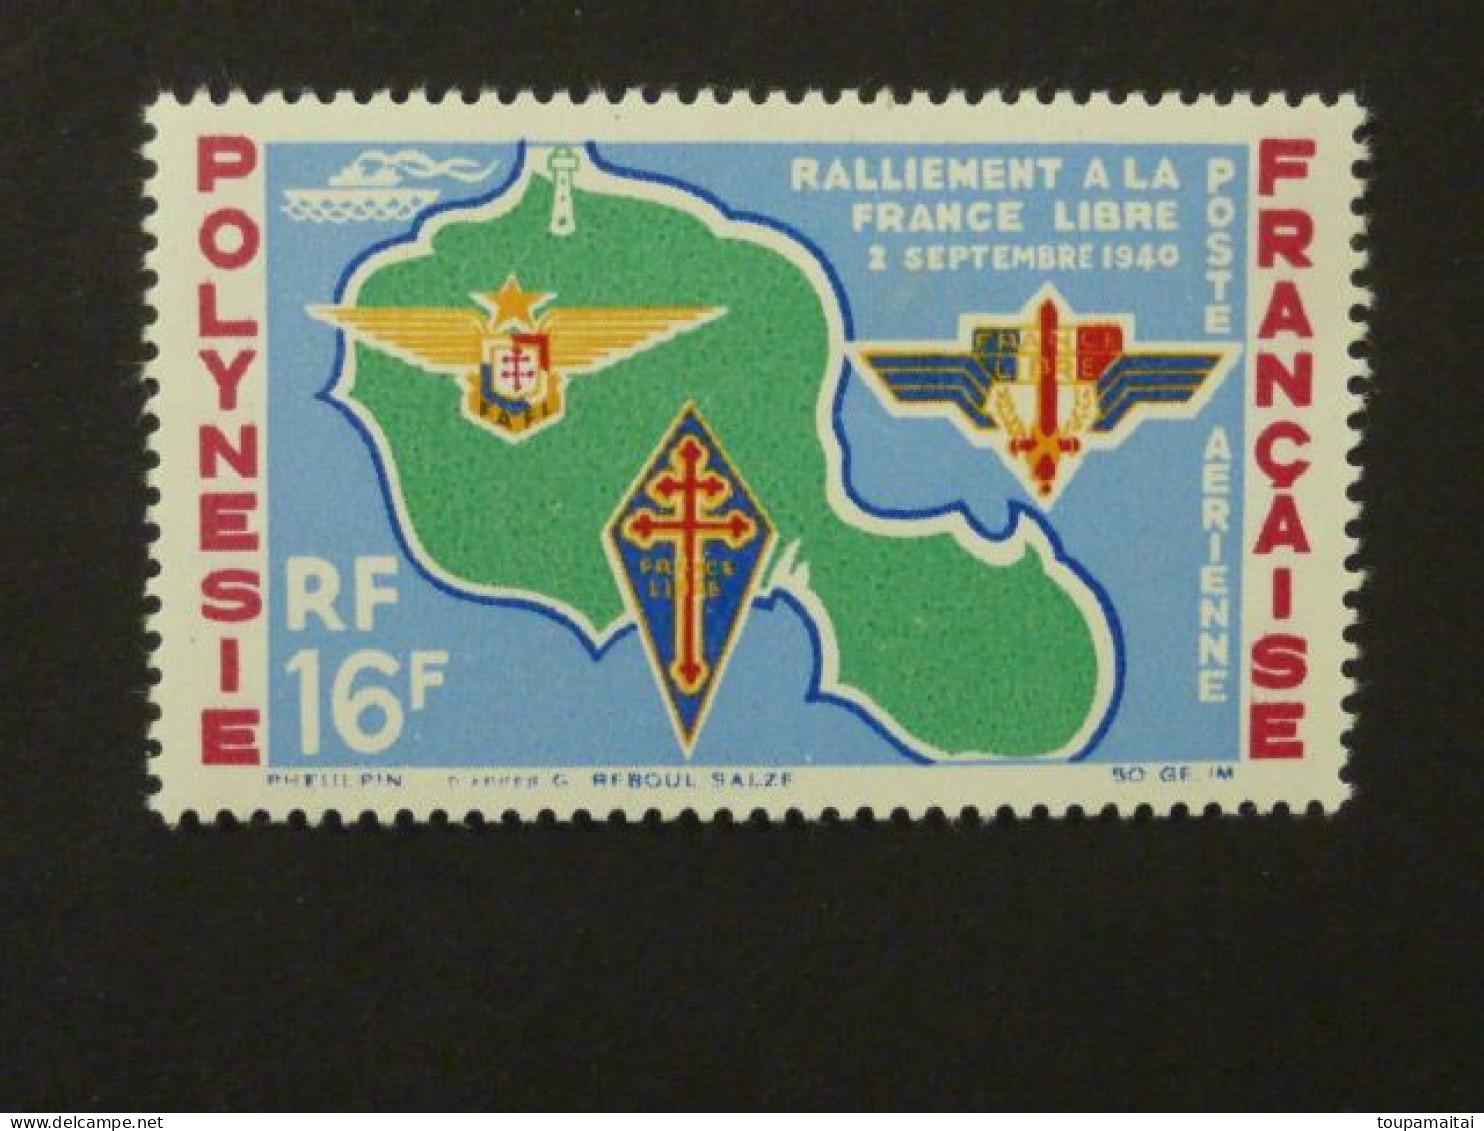 POLYNESIE FRANCAISE, Poste Aérienne, Année 1964, YT N° 8 Neuf MH, Ralliement à La France Libre Le 2 Septembre 1940 - Nuevos